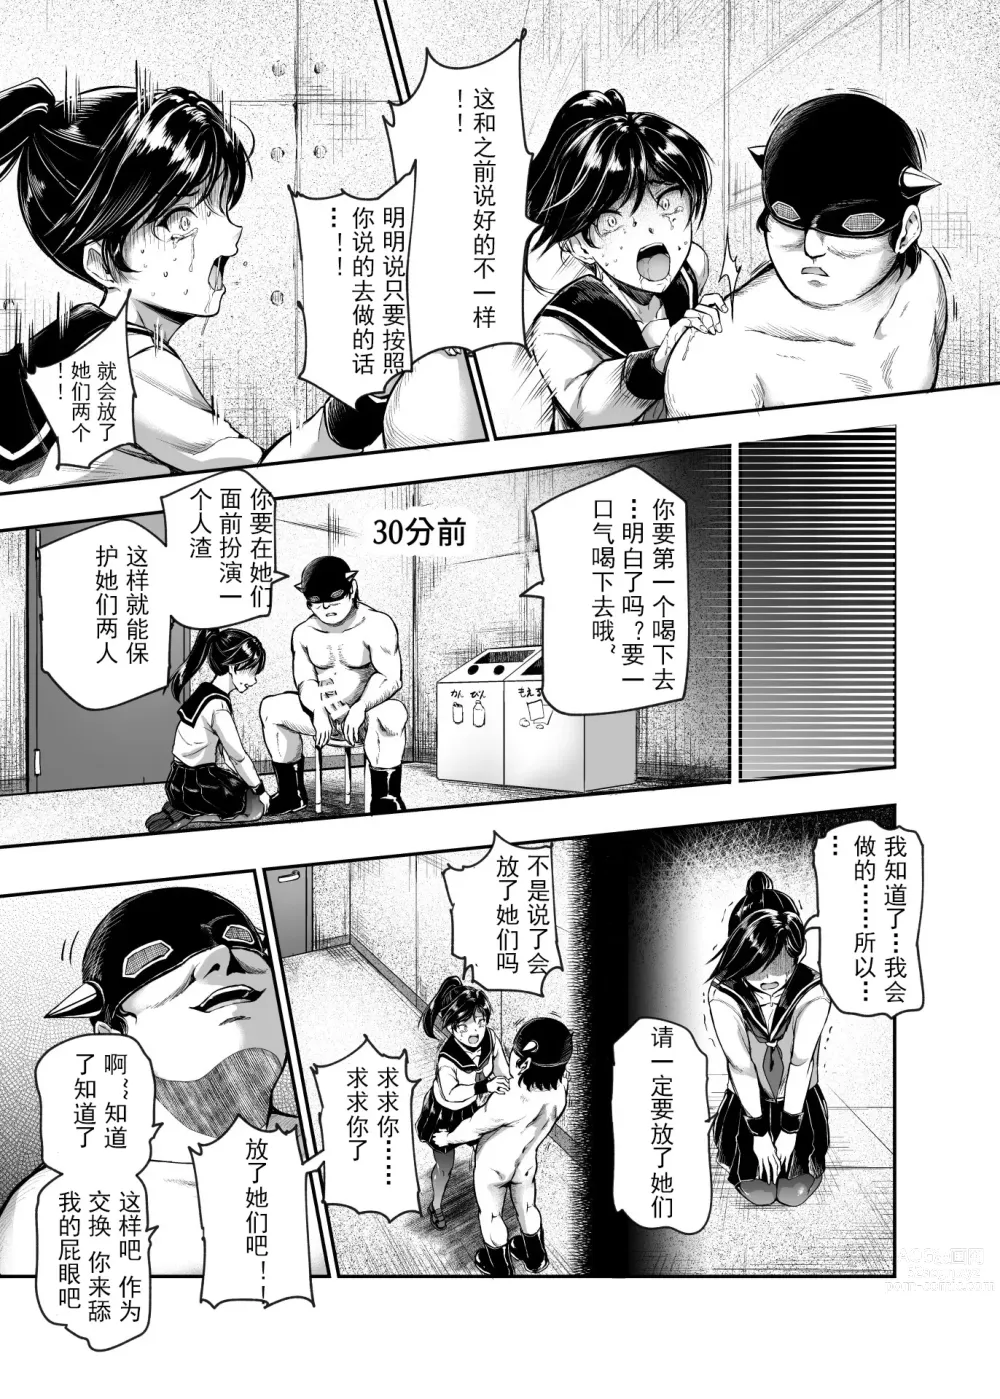 Page 21 of doujinshi 进入邪恶组织工作的话，就可以放肆享受女人性爱自助了吗?EX